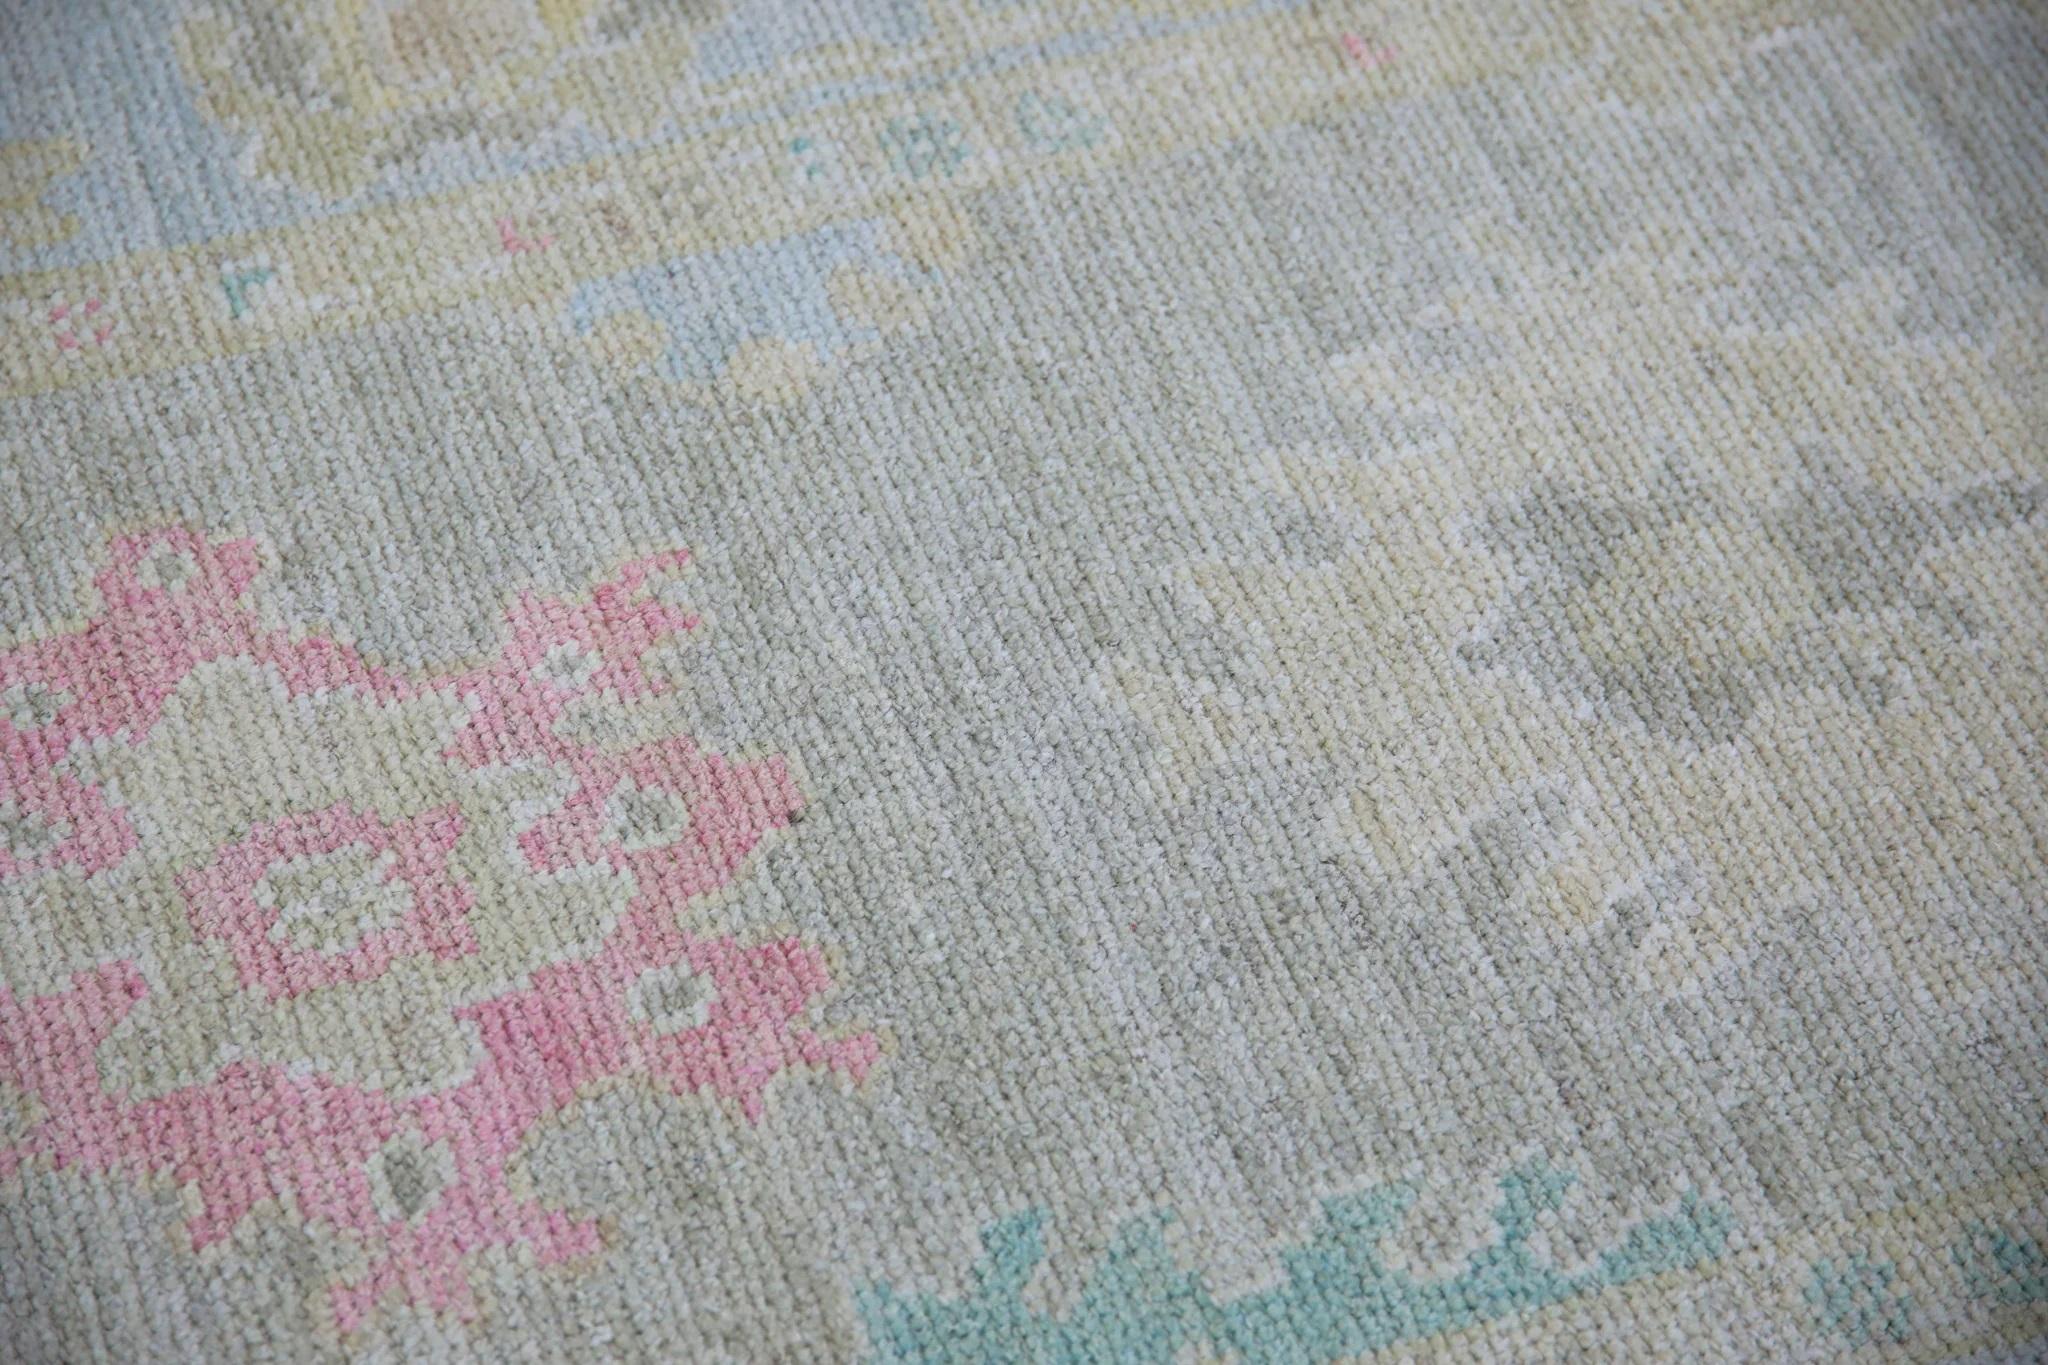 Ce tapis moderne turc Oushak est une œuvre d'art étonnante, tissée à la main selon des techniques traditionnelles par des artisans qualifiés. Le tapis présente des motifs complexes et une palette de couleurs douces obtenue grâce à l'utilisation de